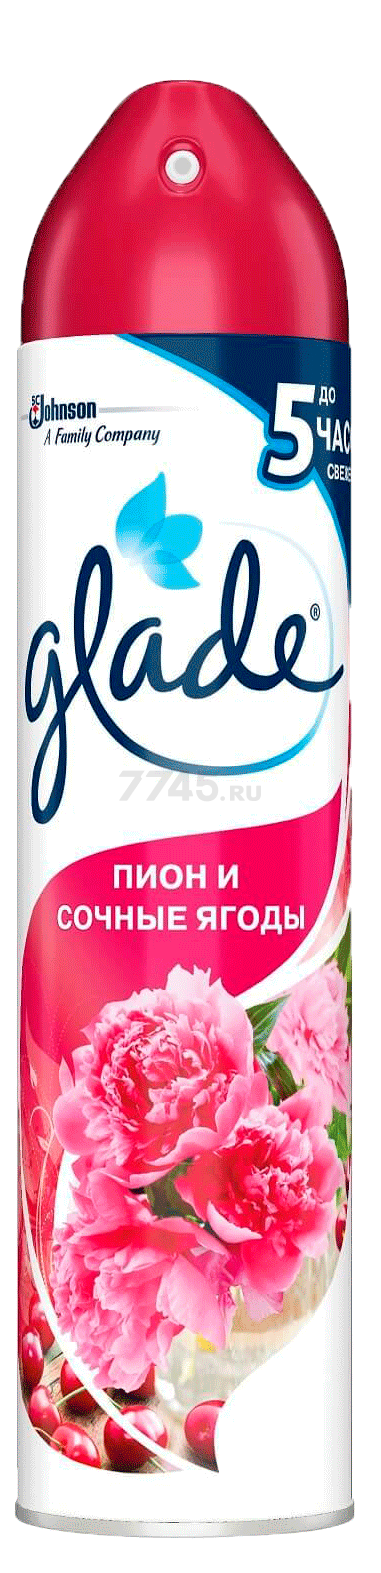 Освежитель воздуха GLADE Пион и сочные ягоды 300 мл (5000204954876)